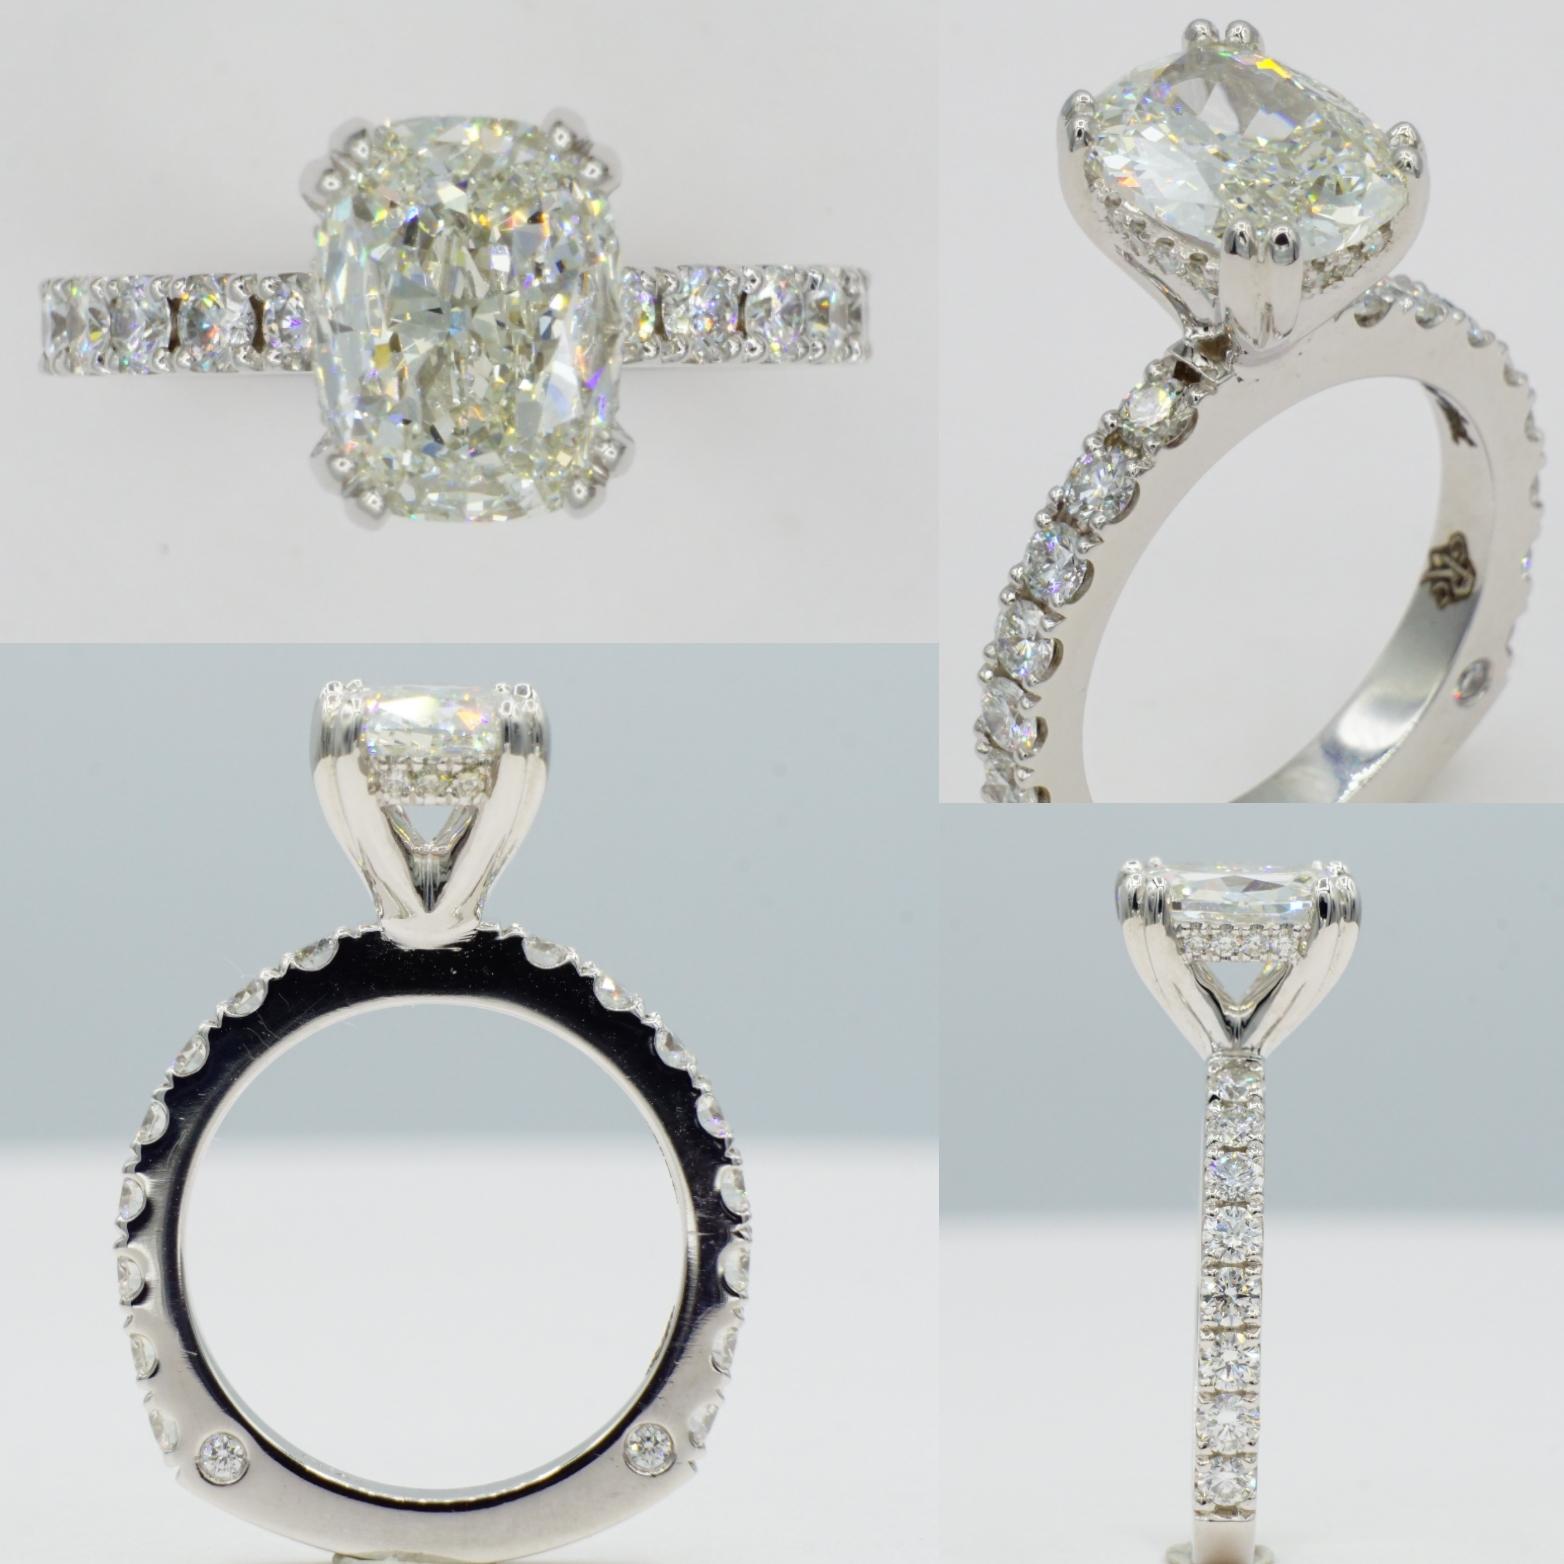 Superbe bague de fiançailles en platine 950-ruthénium fabriquée sur mesure, ornée d'un diamant taille coussin de 1,75 ct certifié par le GIA, serti dans une monture extraordinaire avec des griffes fendues et un halo de diamants cachés. Le diamant